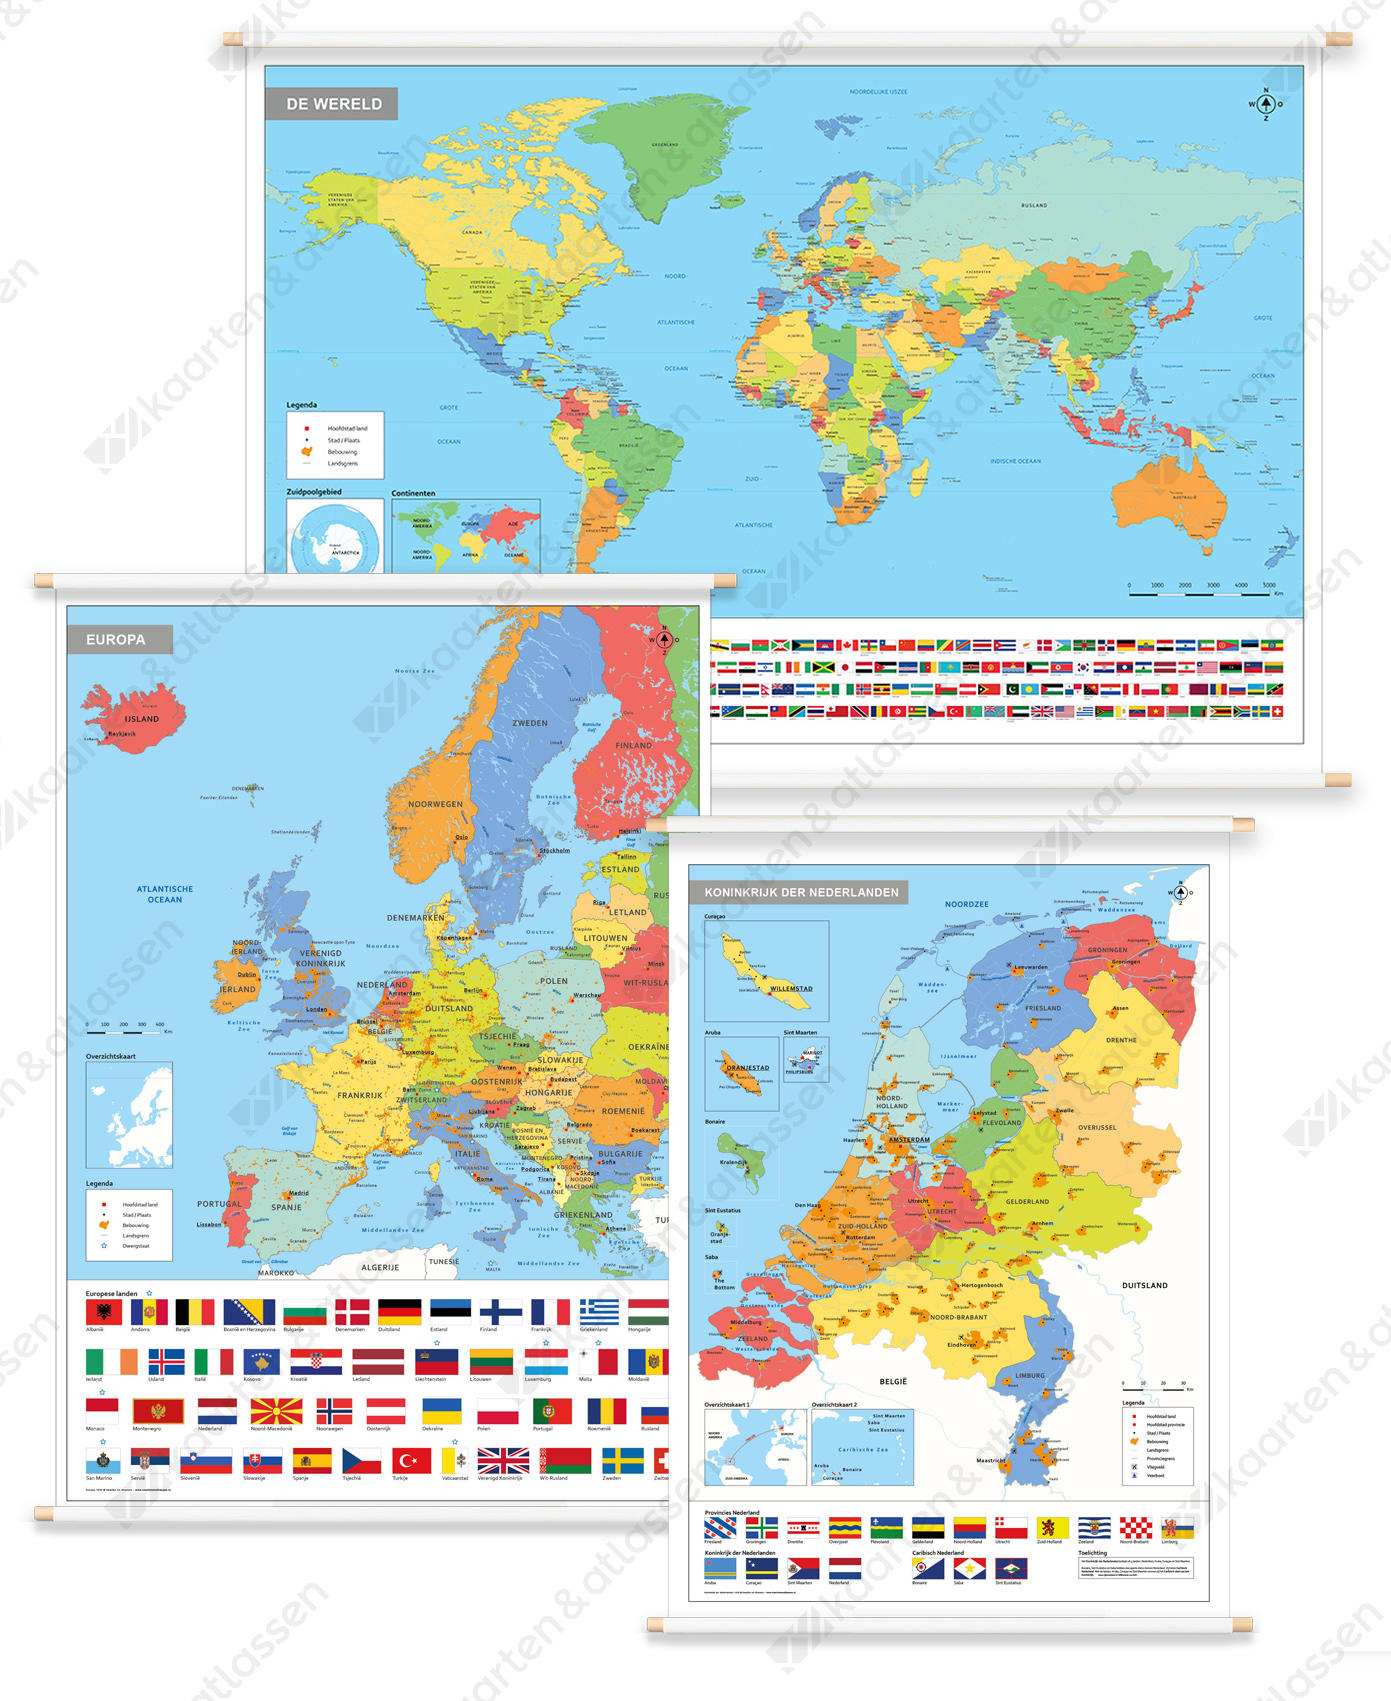 3 Schoolkaarten Nederland/Europa/Wereld met Vlaggen